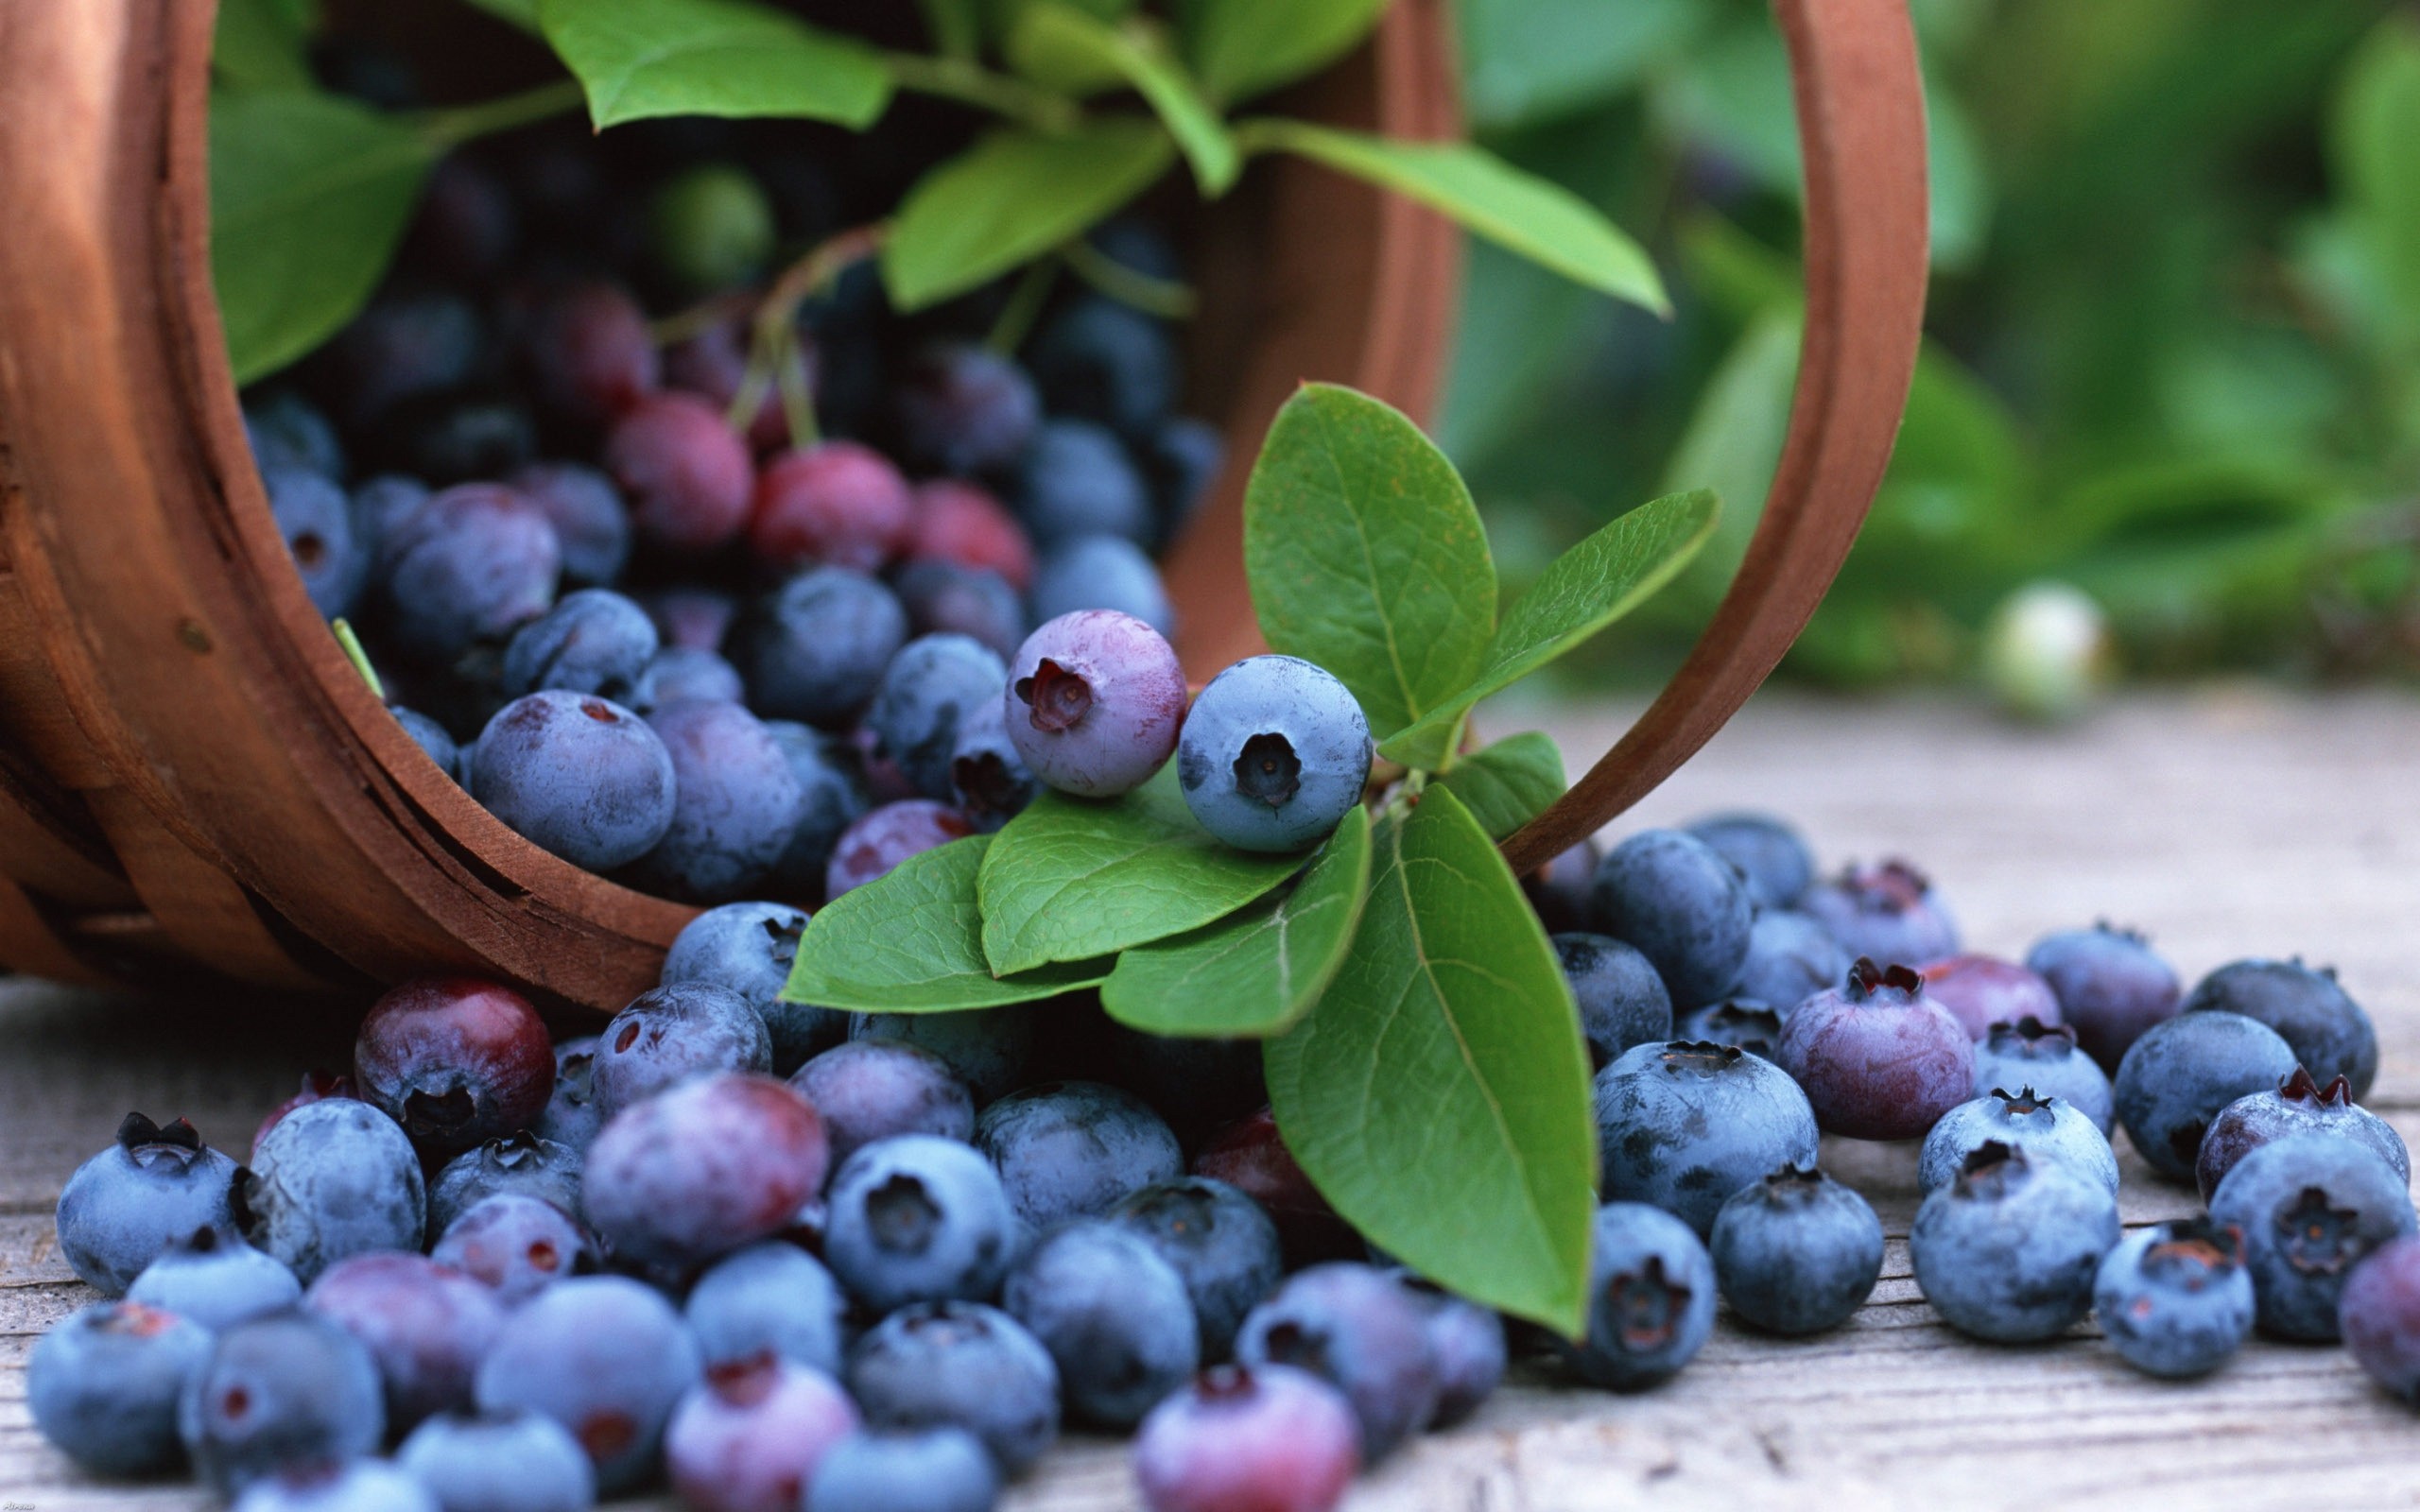 General 2560x1600 fruit berries blueberries leaves baskets food closeup